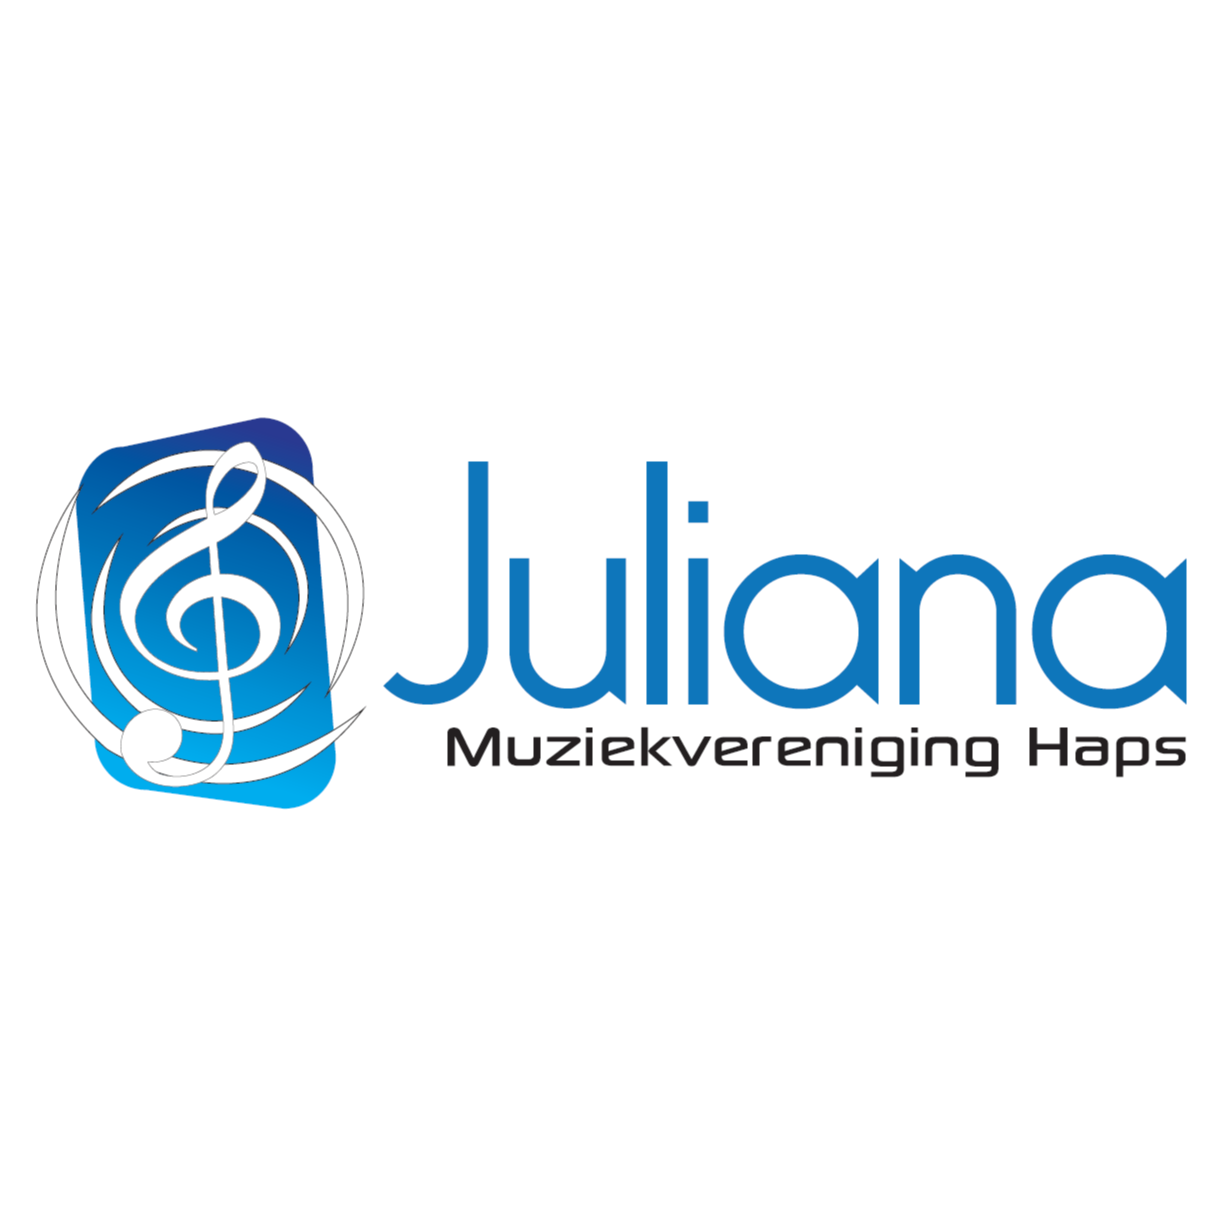 Muziekvereniging Juliana